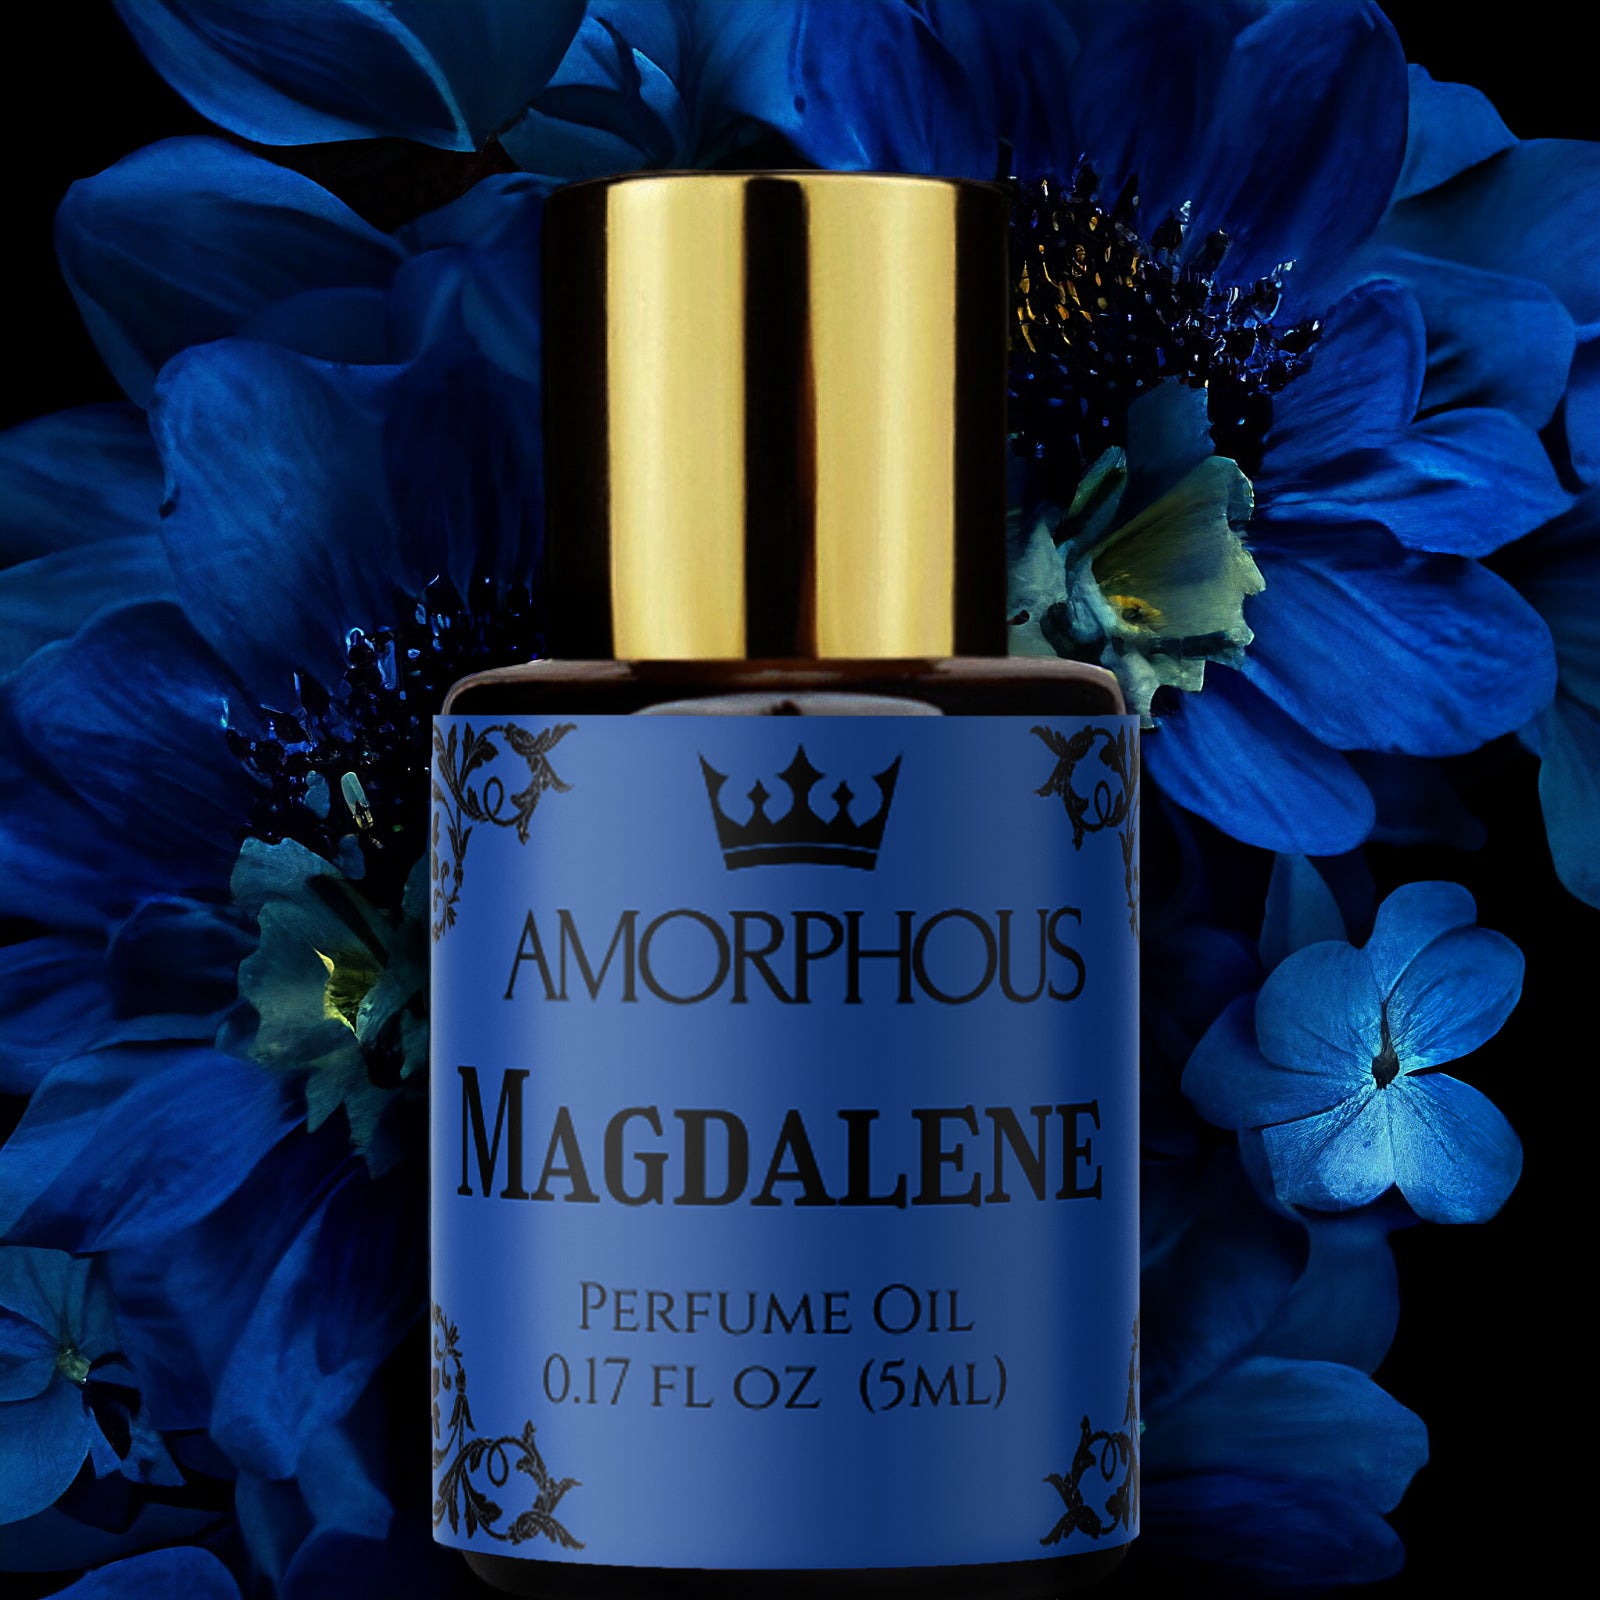 Magdalene perfume oil